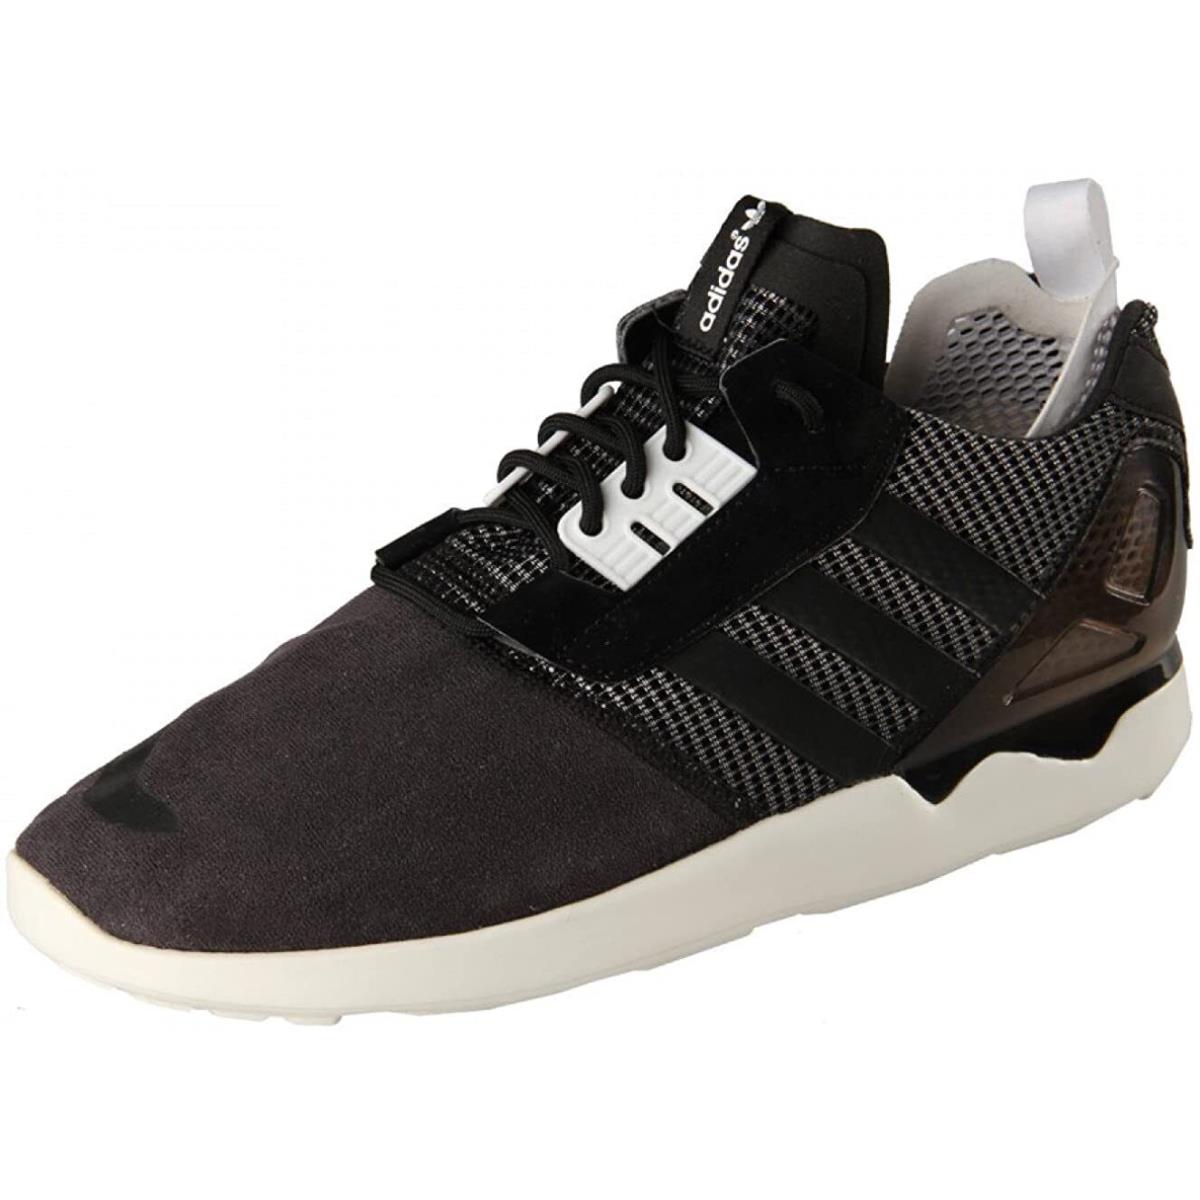 Adidas Originals ZX Boost 8000 Black Mens Shoes Size U.s. 10.5